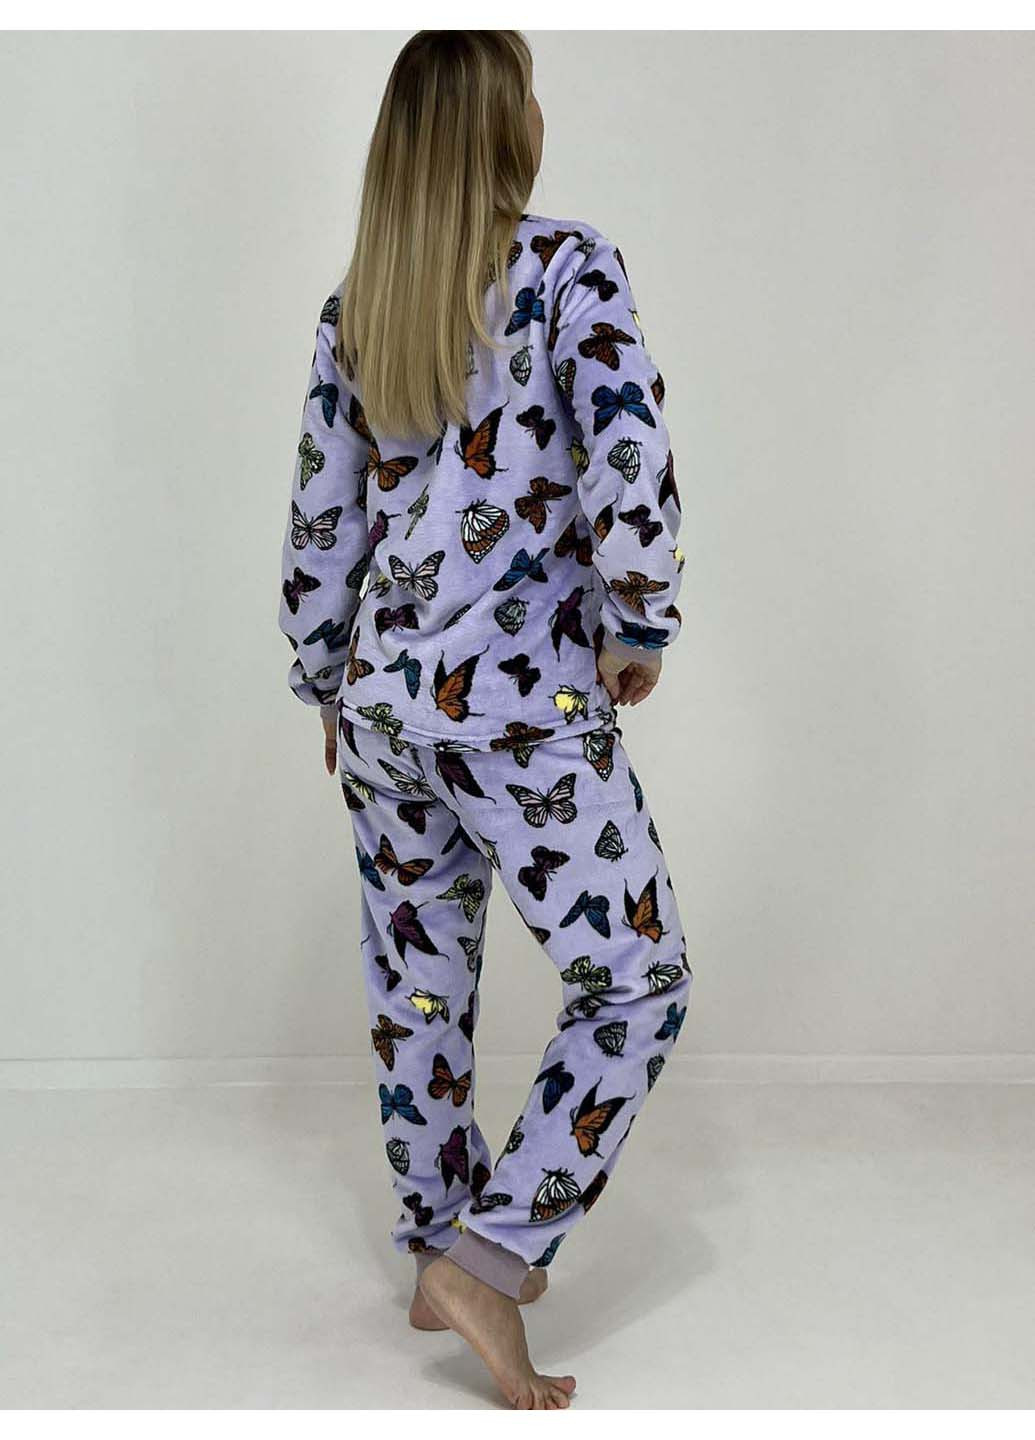 Сиреневая зимняя пижама нежные бабочки кофта + брюки Triko 96008181